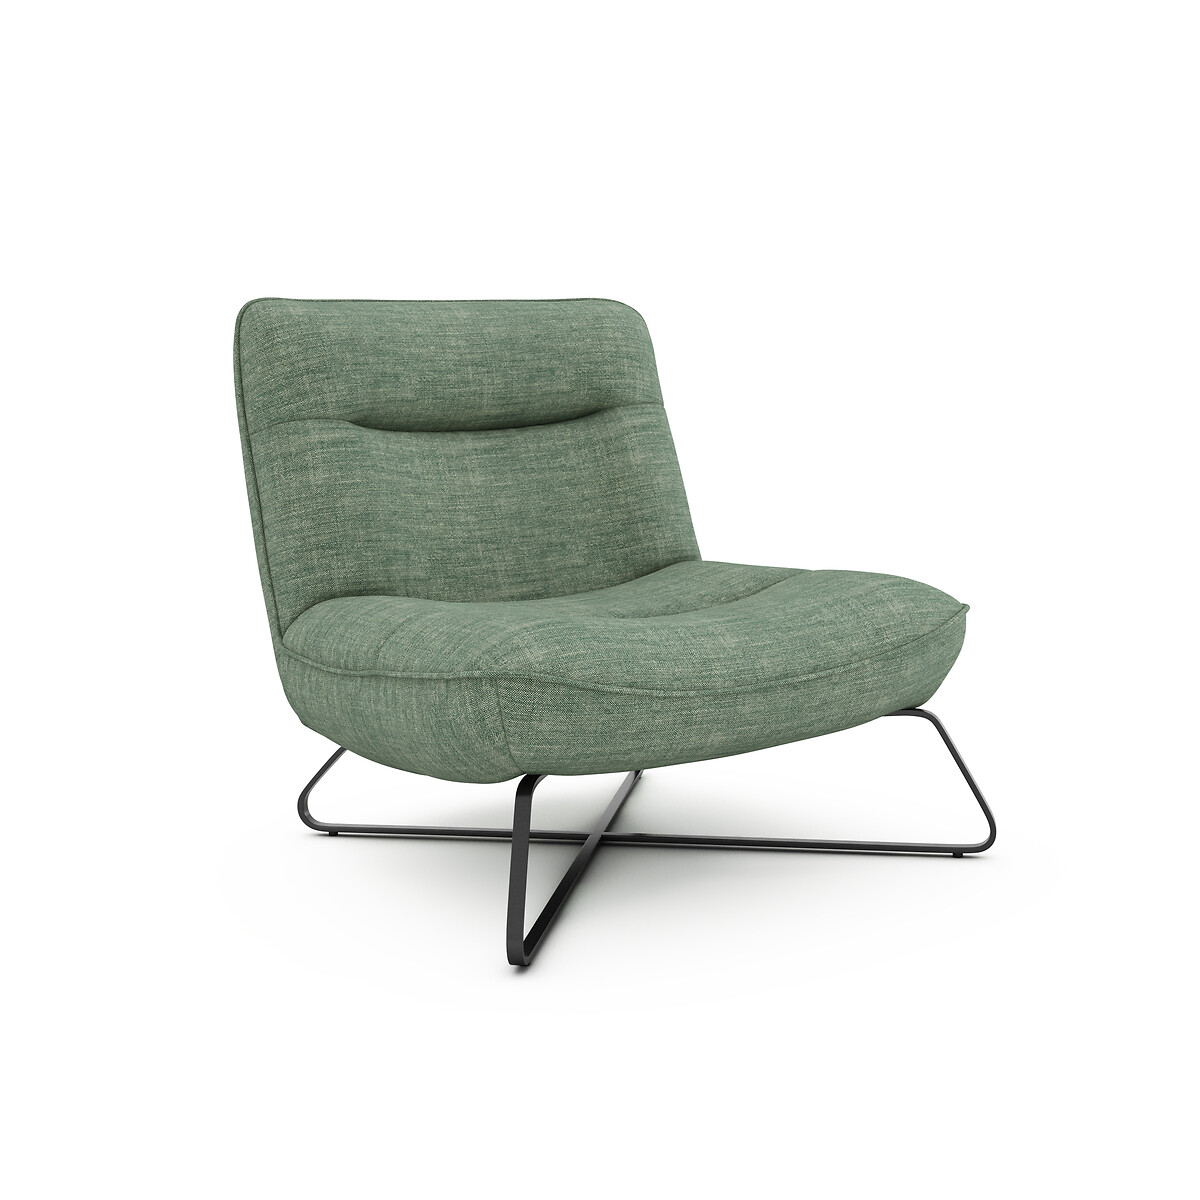 Кресло из 100 льна Helma единый размер зеленый кресло из льна franck единый размер бежевый